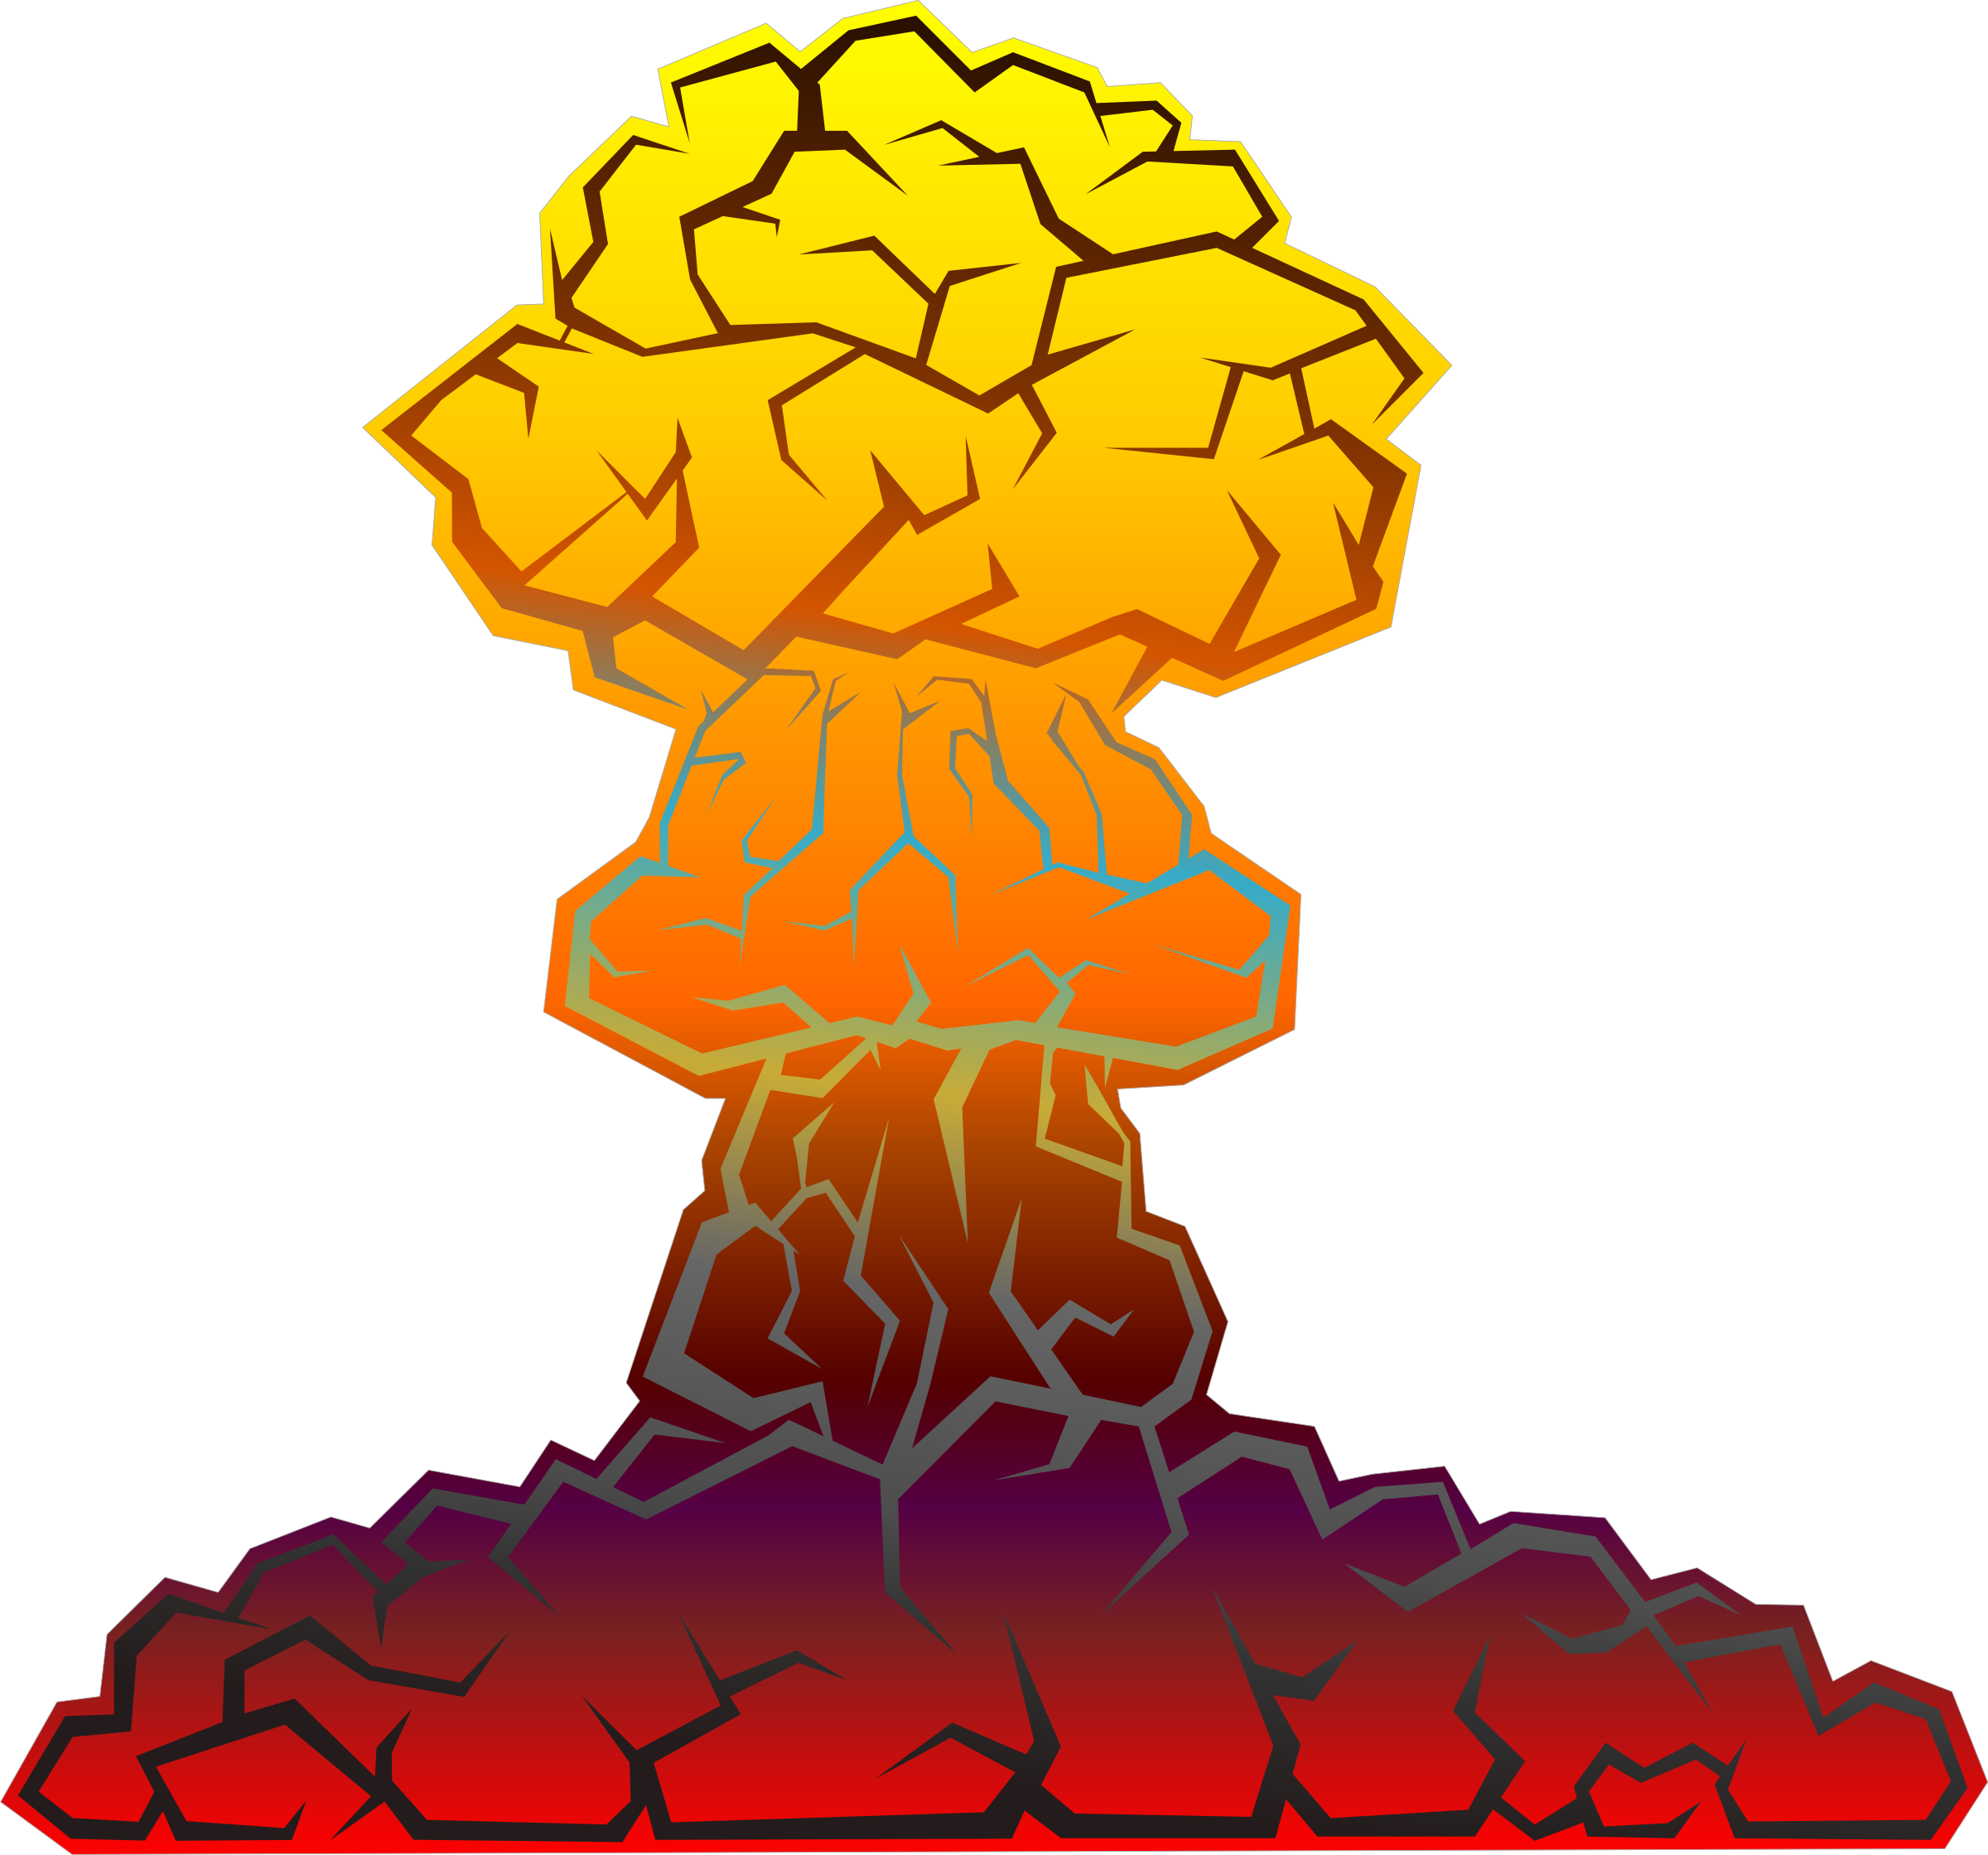 Stylized Explosion Illustration